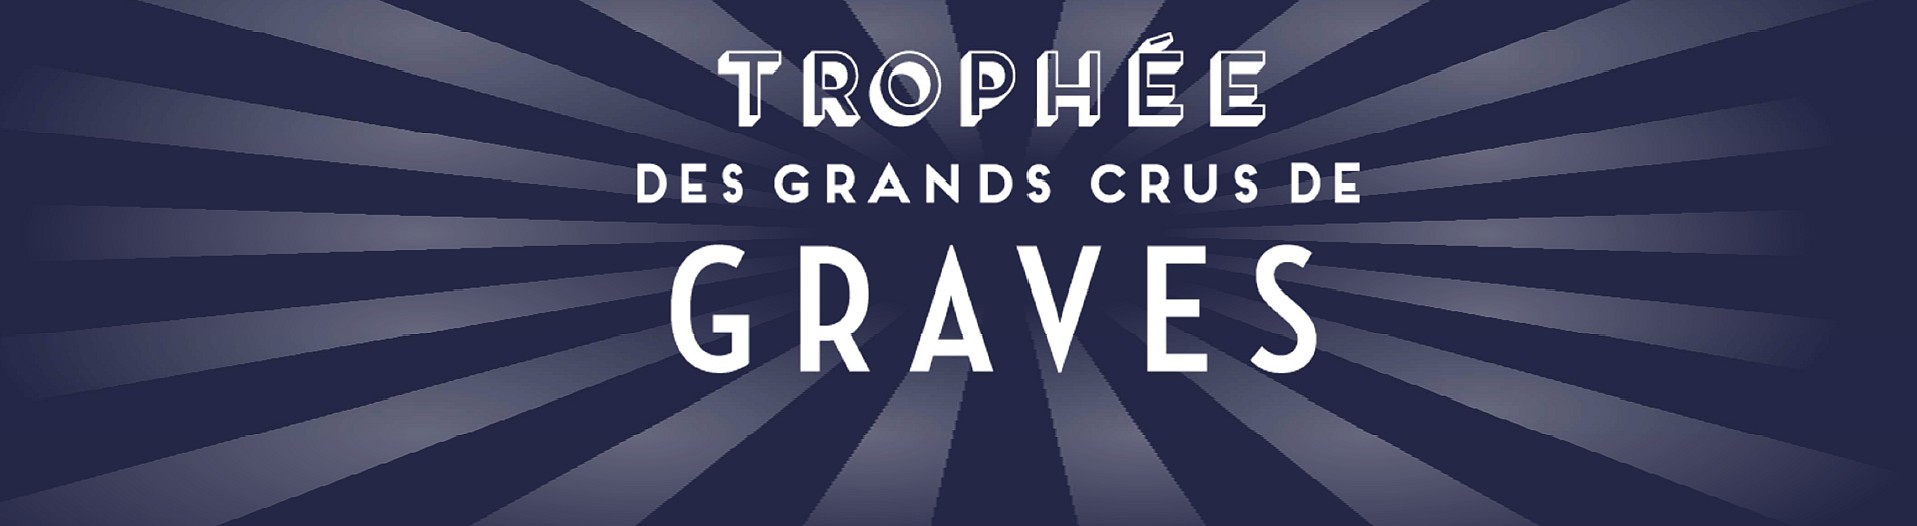 Trophée des Grands Crus de Graves : Palmarès 2016